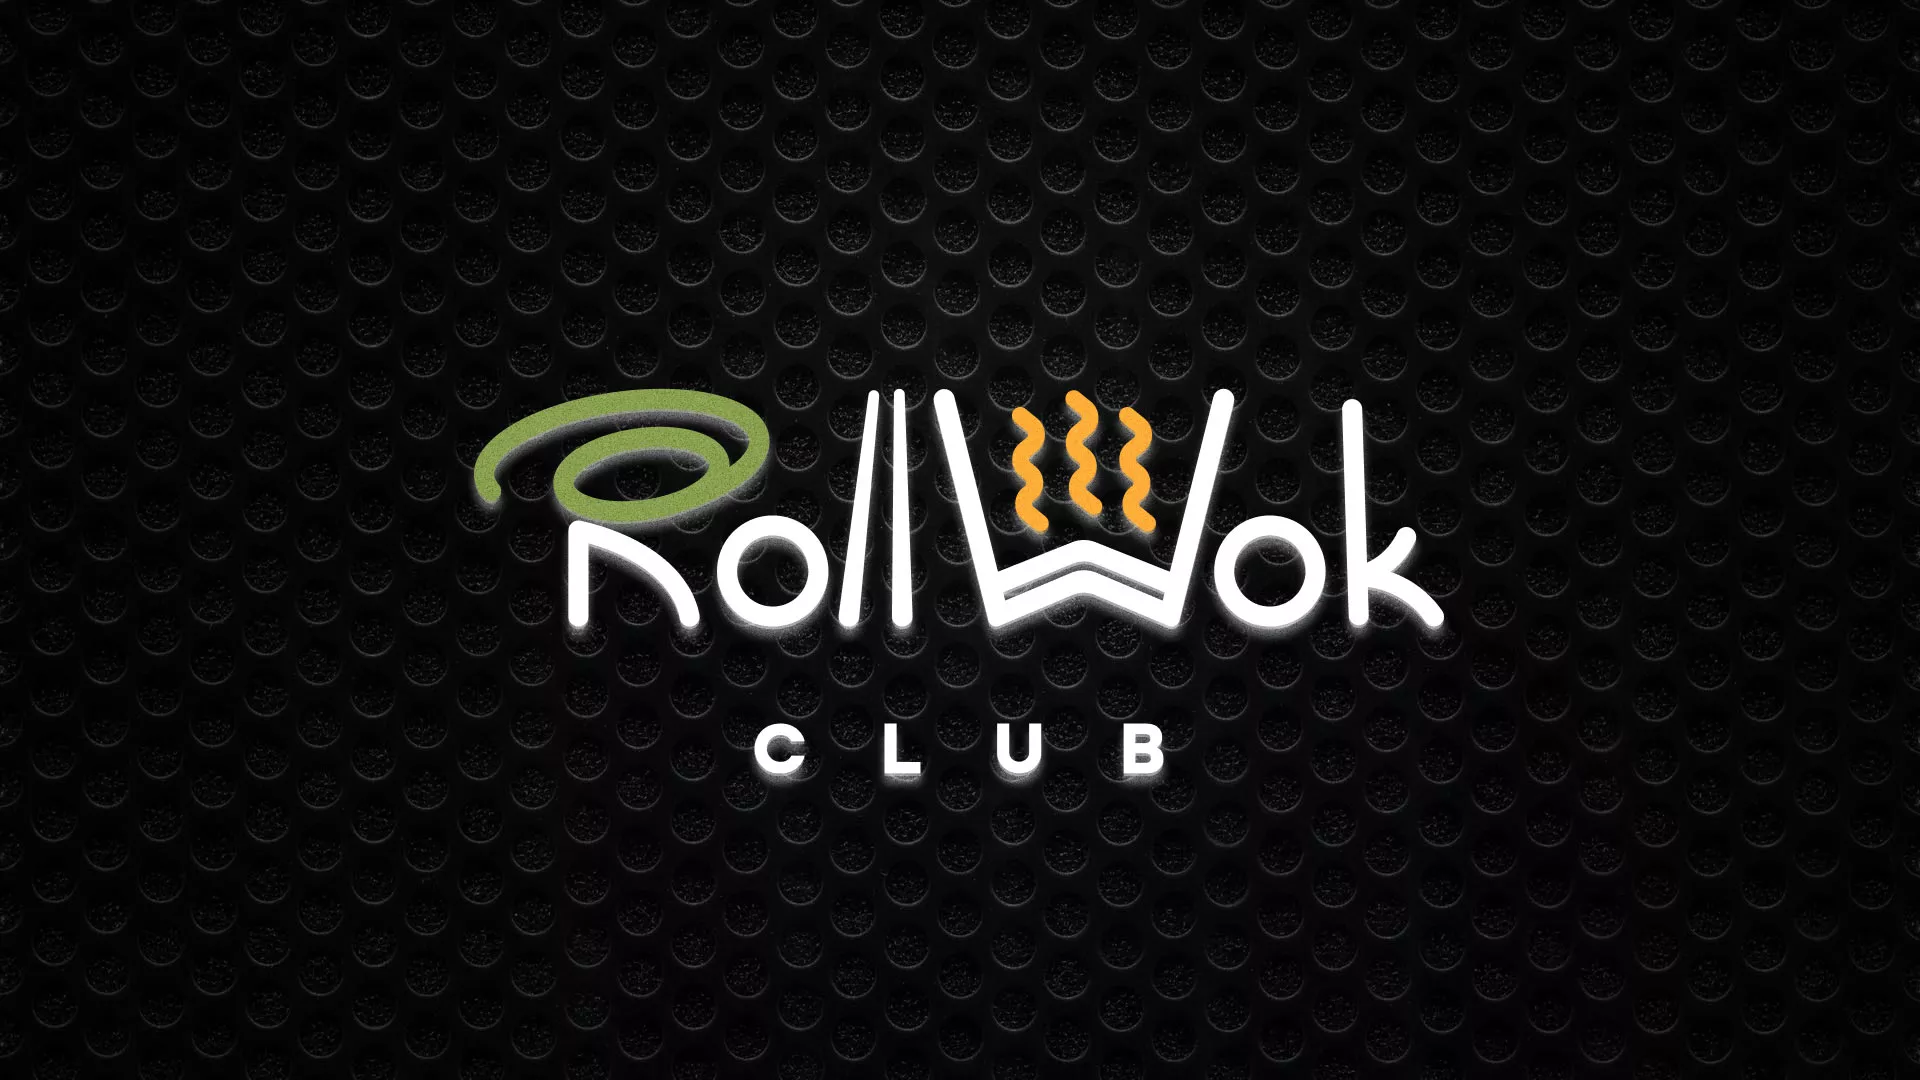 Брендирование торговых точек суши-бара «Roll Wok Club» в Усть-Джегуте